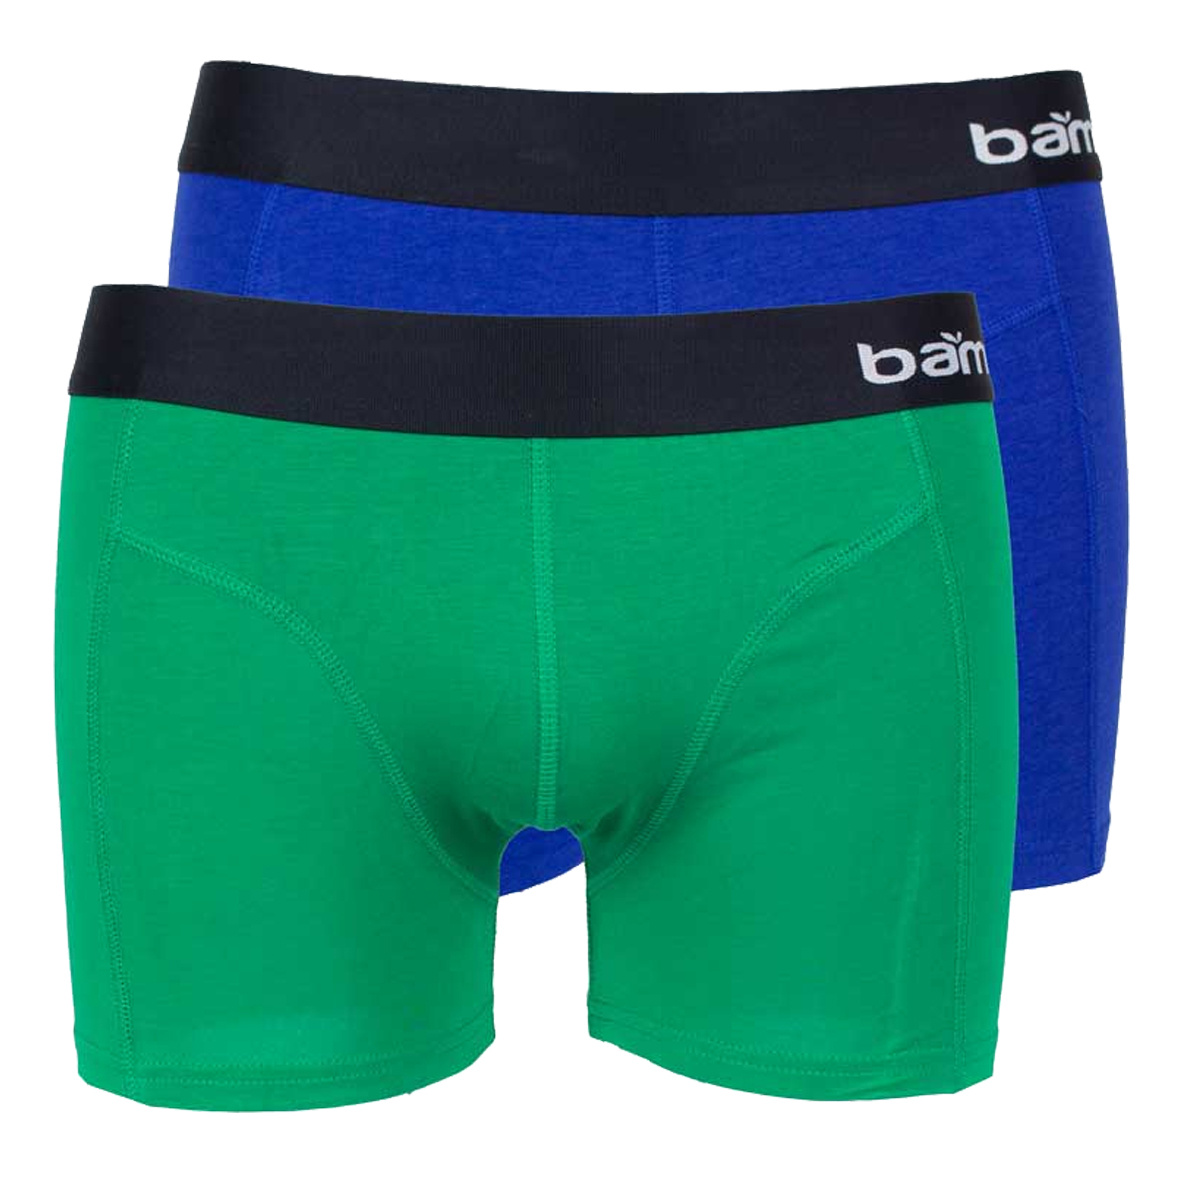 Afbeelding van Apollo Bamboe boxershort heren blauw / groen 2-pack